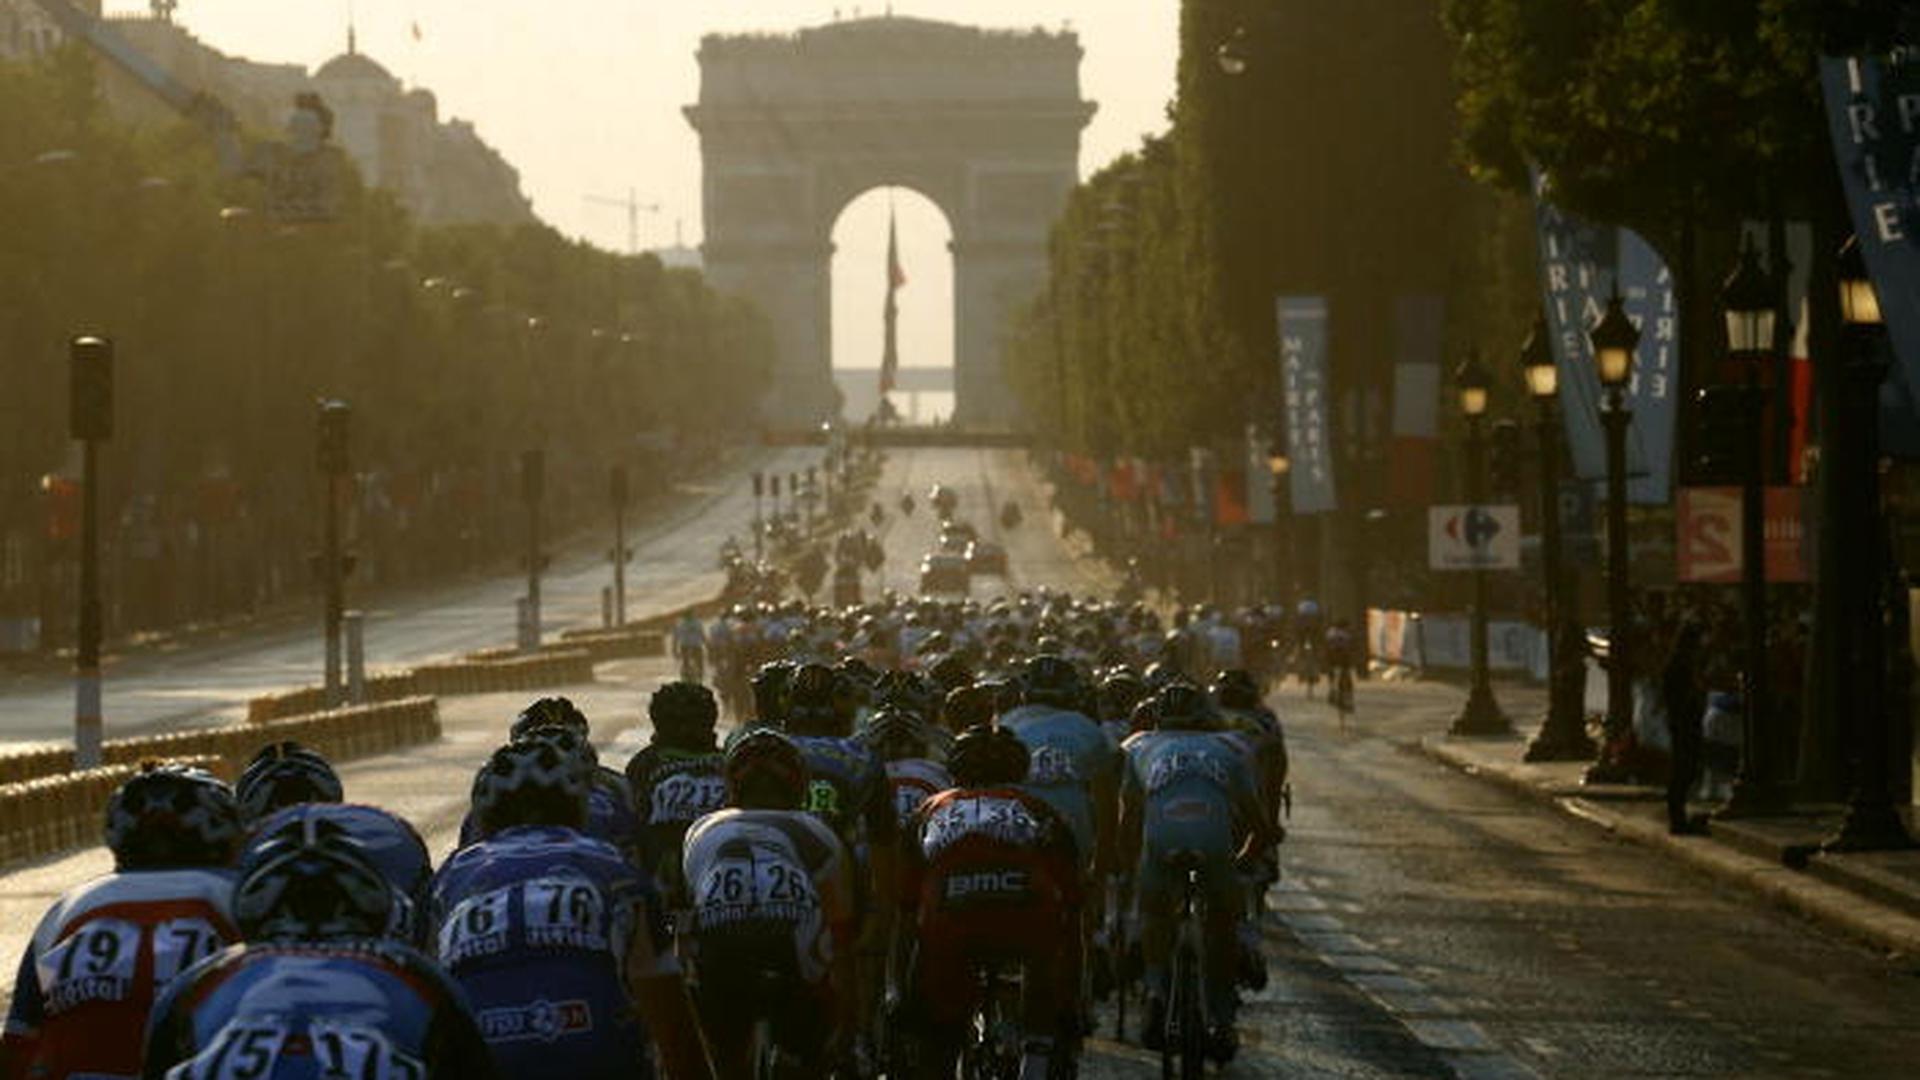 Si le nombre de coureurs passe de 9 à 8, le Tour de France se déroulera avec le même nombre d'équipes soit 22.